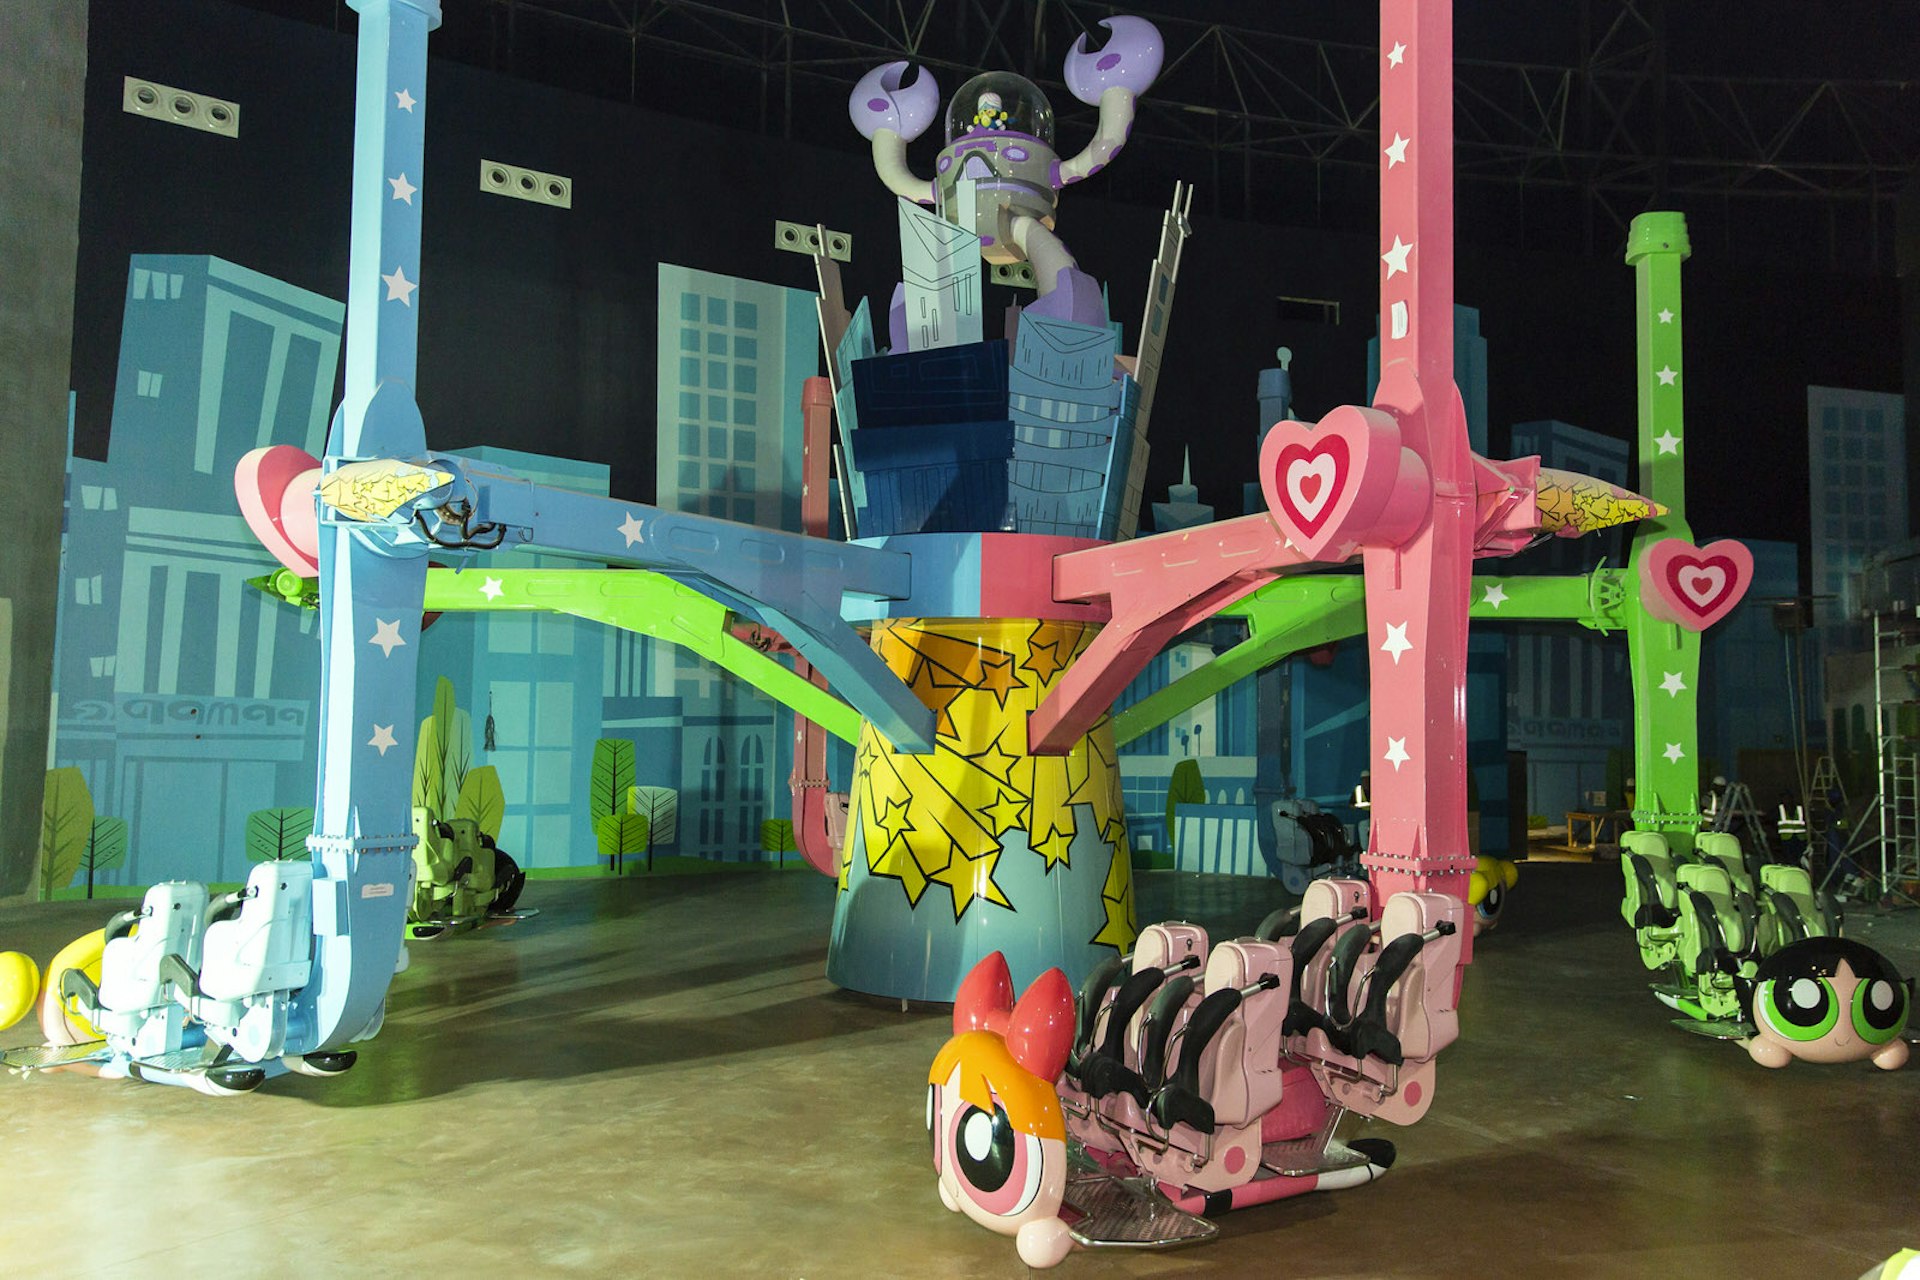 The Powerpuff Girls Ride in the Cartoon Network Zone © IMG World of Adventure